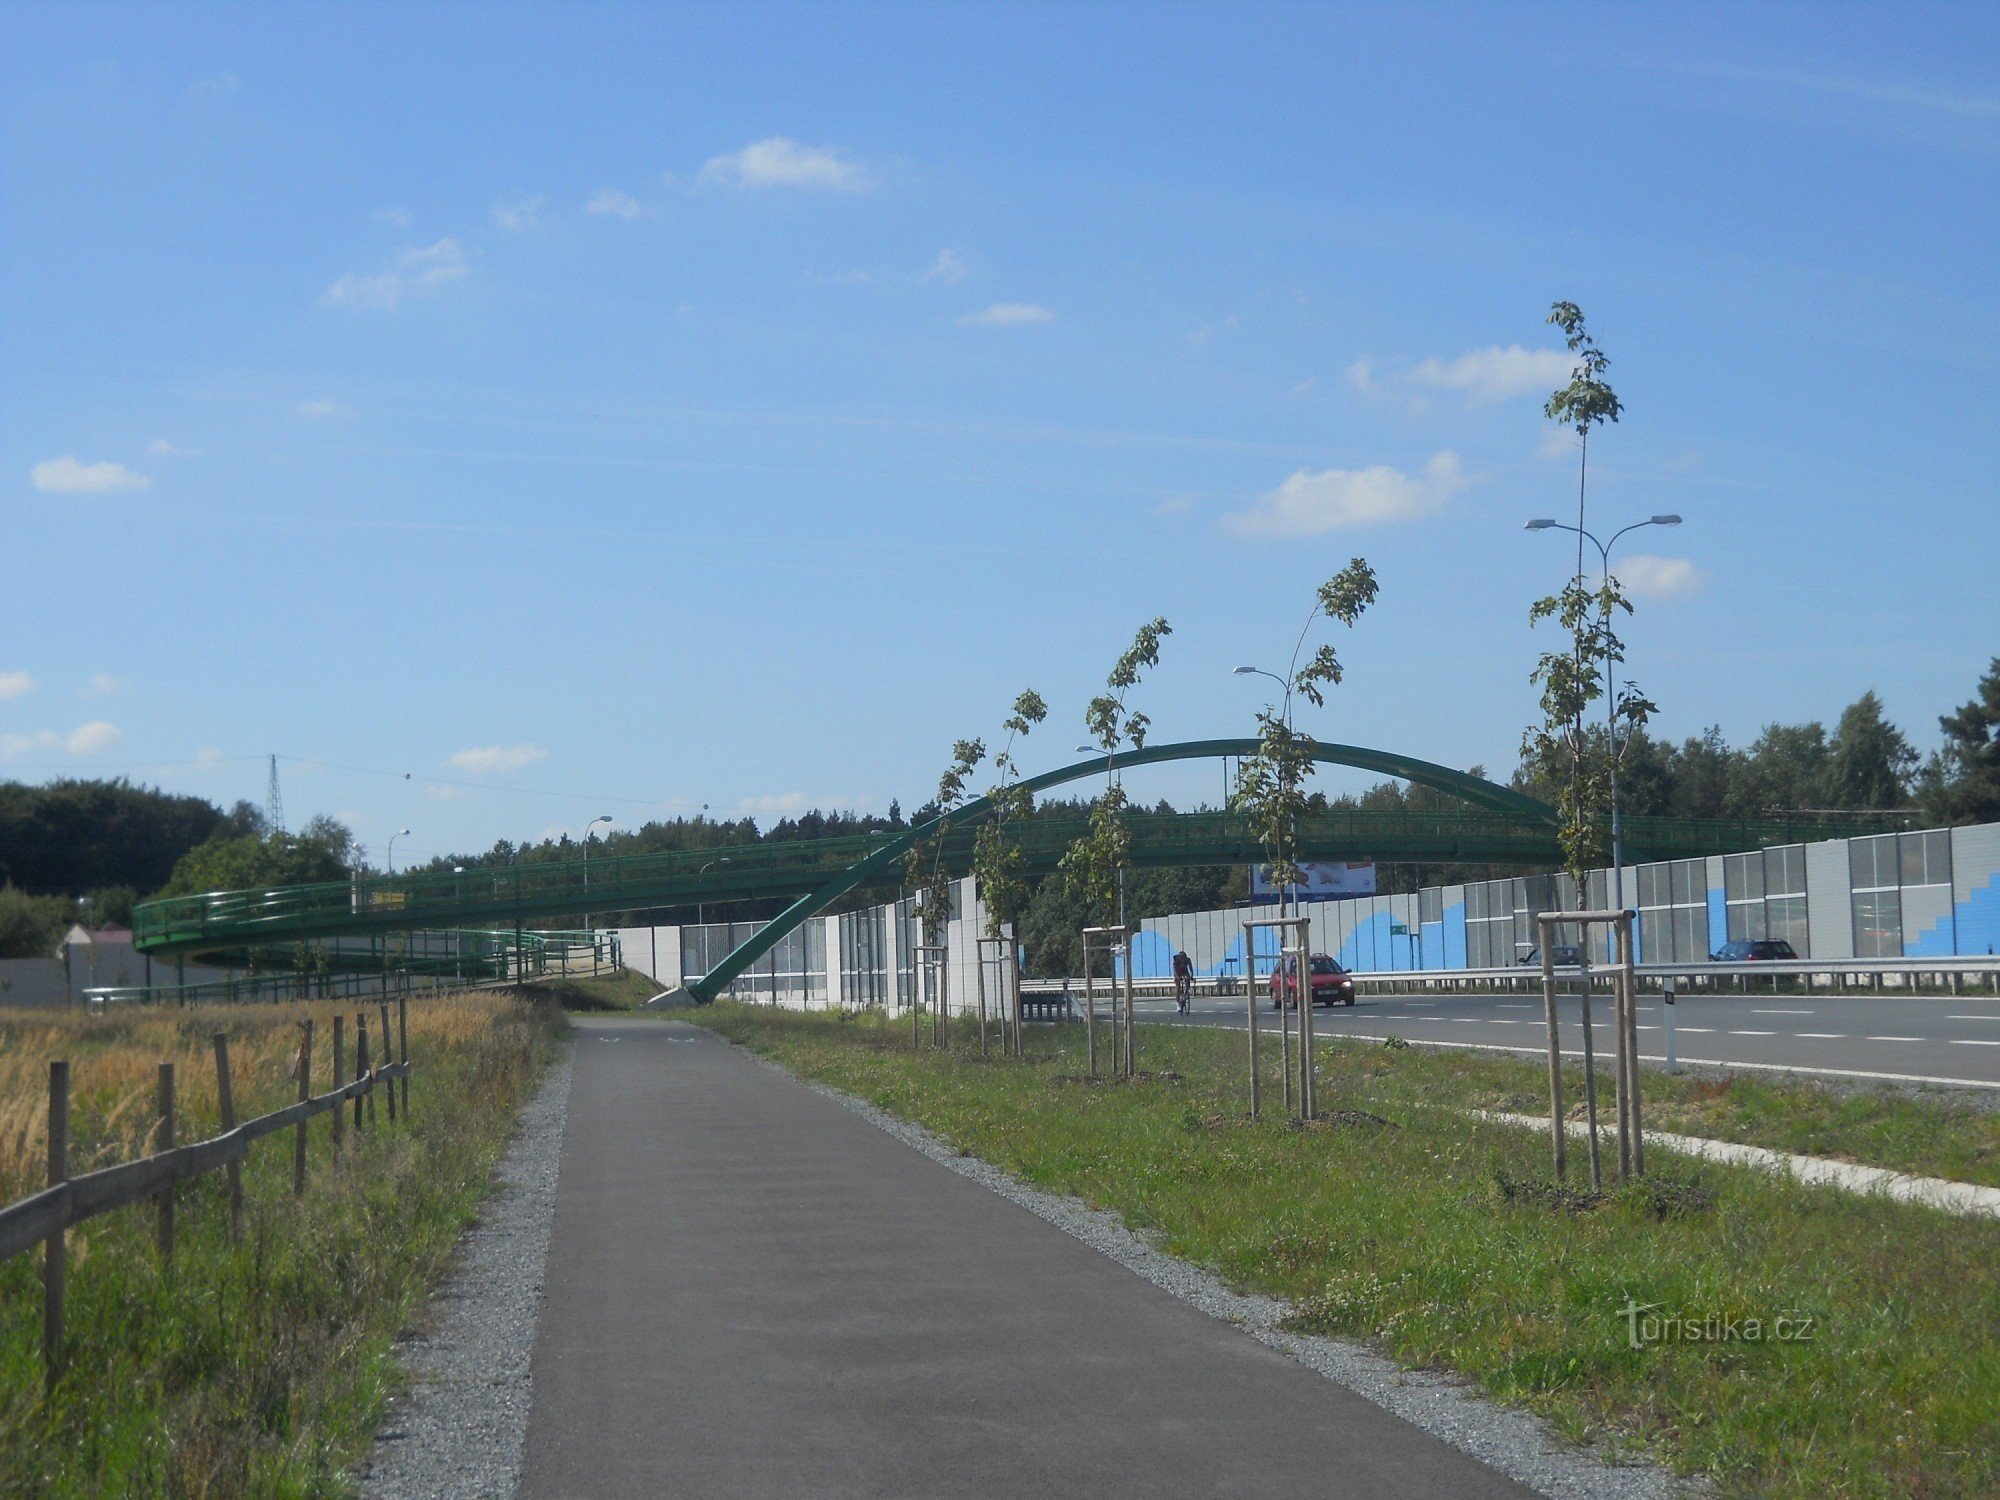 Cầu mới dành cho người đi bộ và đi xe đạp qua Domažlická